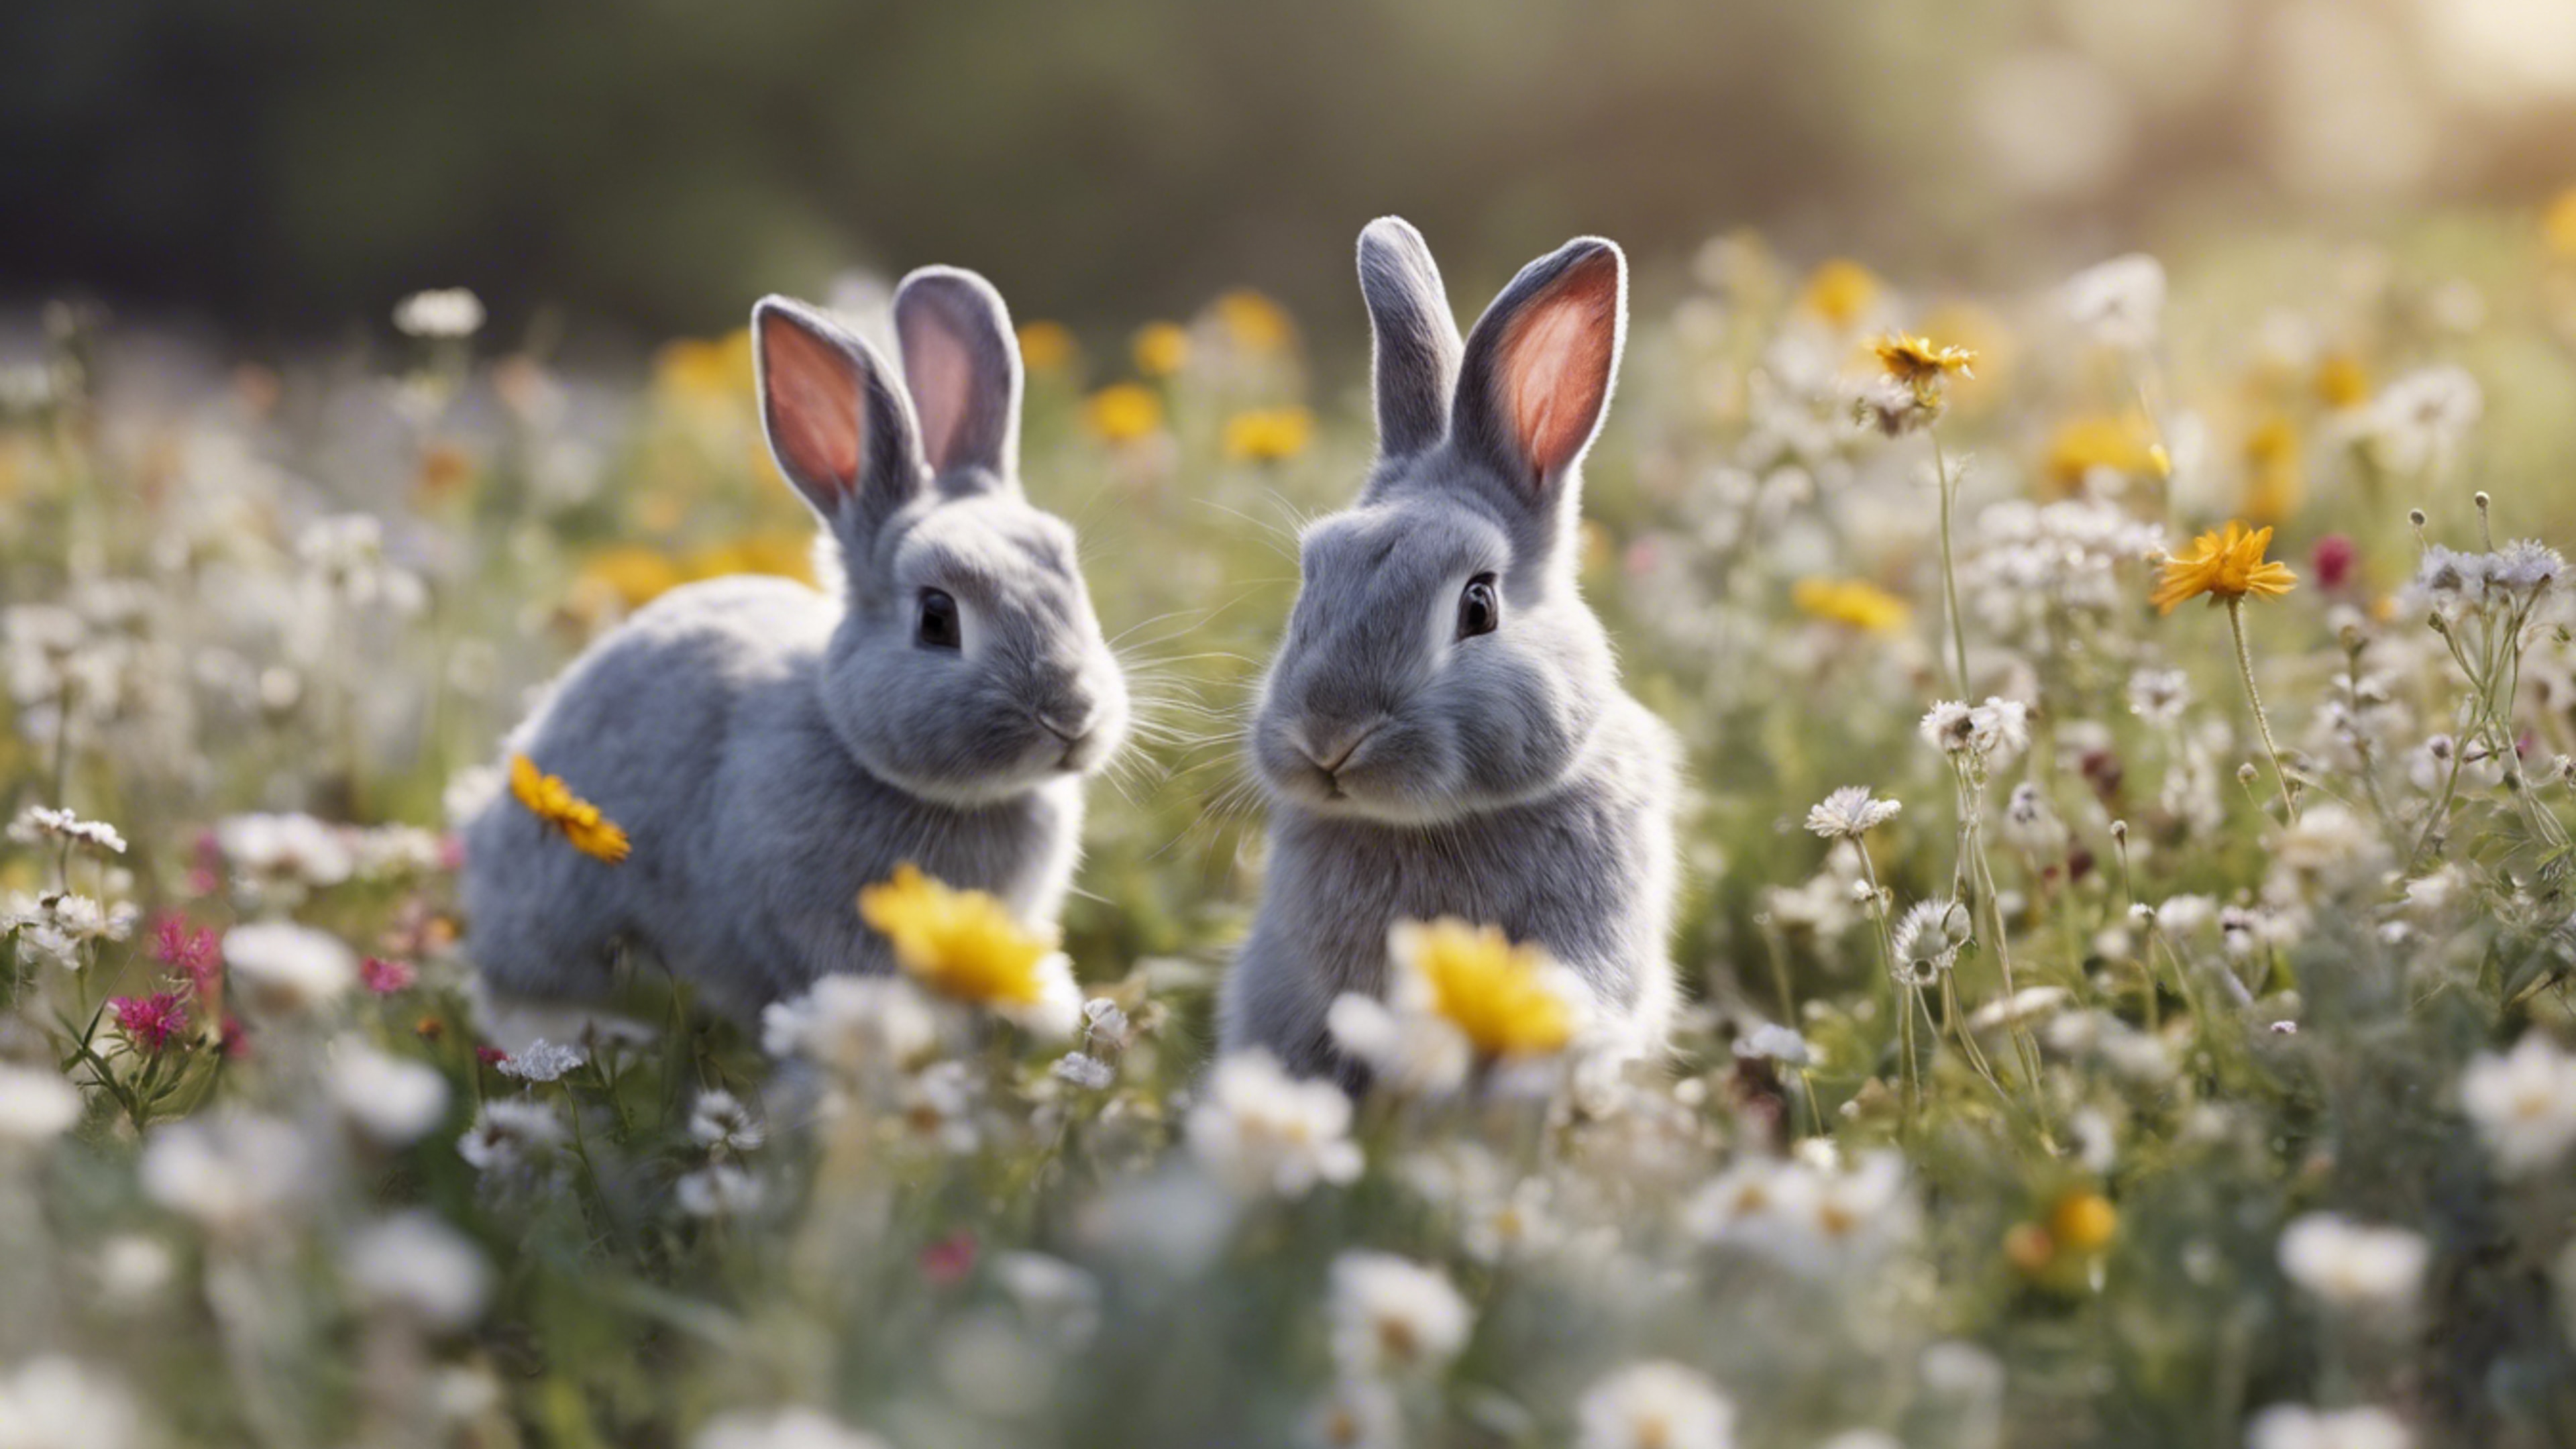 A delightful scene of light gray bunnies hopping joyfully in a field of wildflowers. 牆紙[55b62c2e72f746fbb97a]